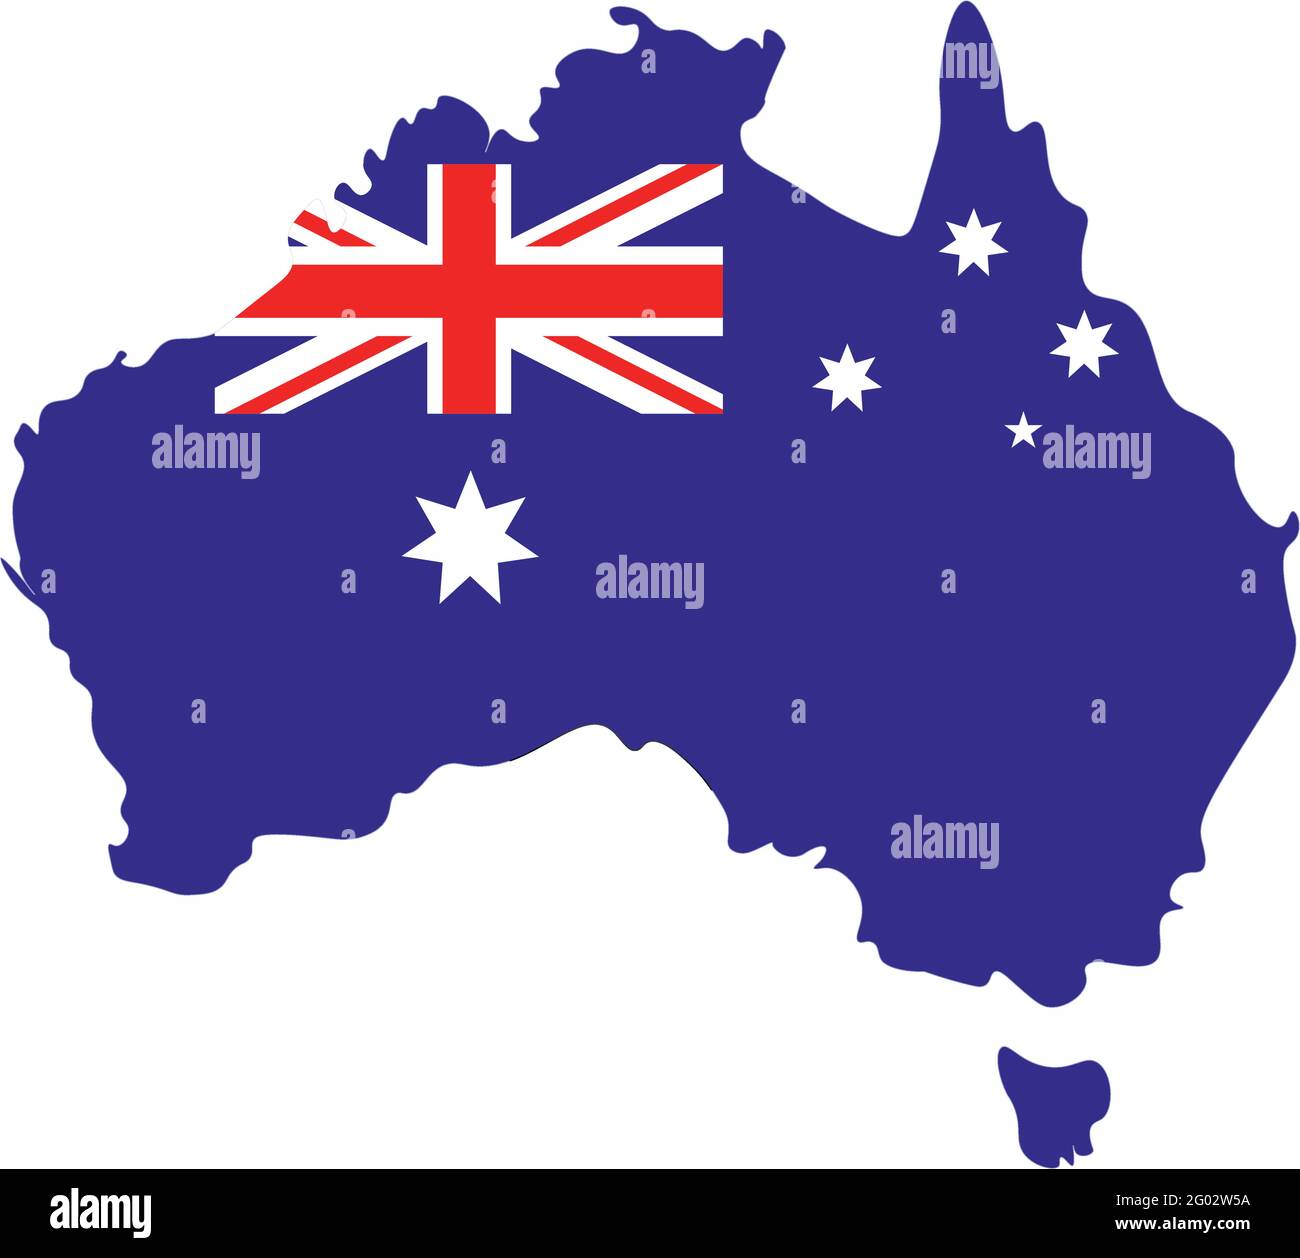 Vektor isolierte Illustrationskarte mit blauer Silhouette des Kontinents Australien und Nationalflagge. Weißer Hintergrund Stock Vektor